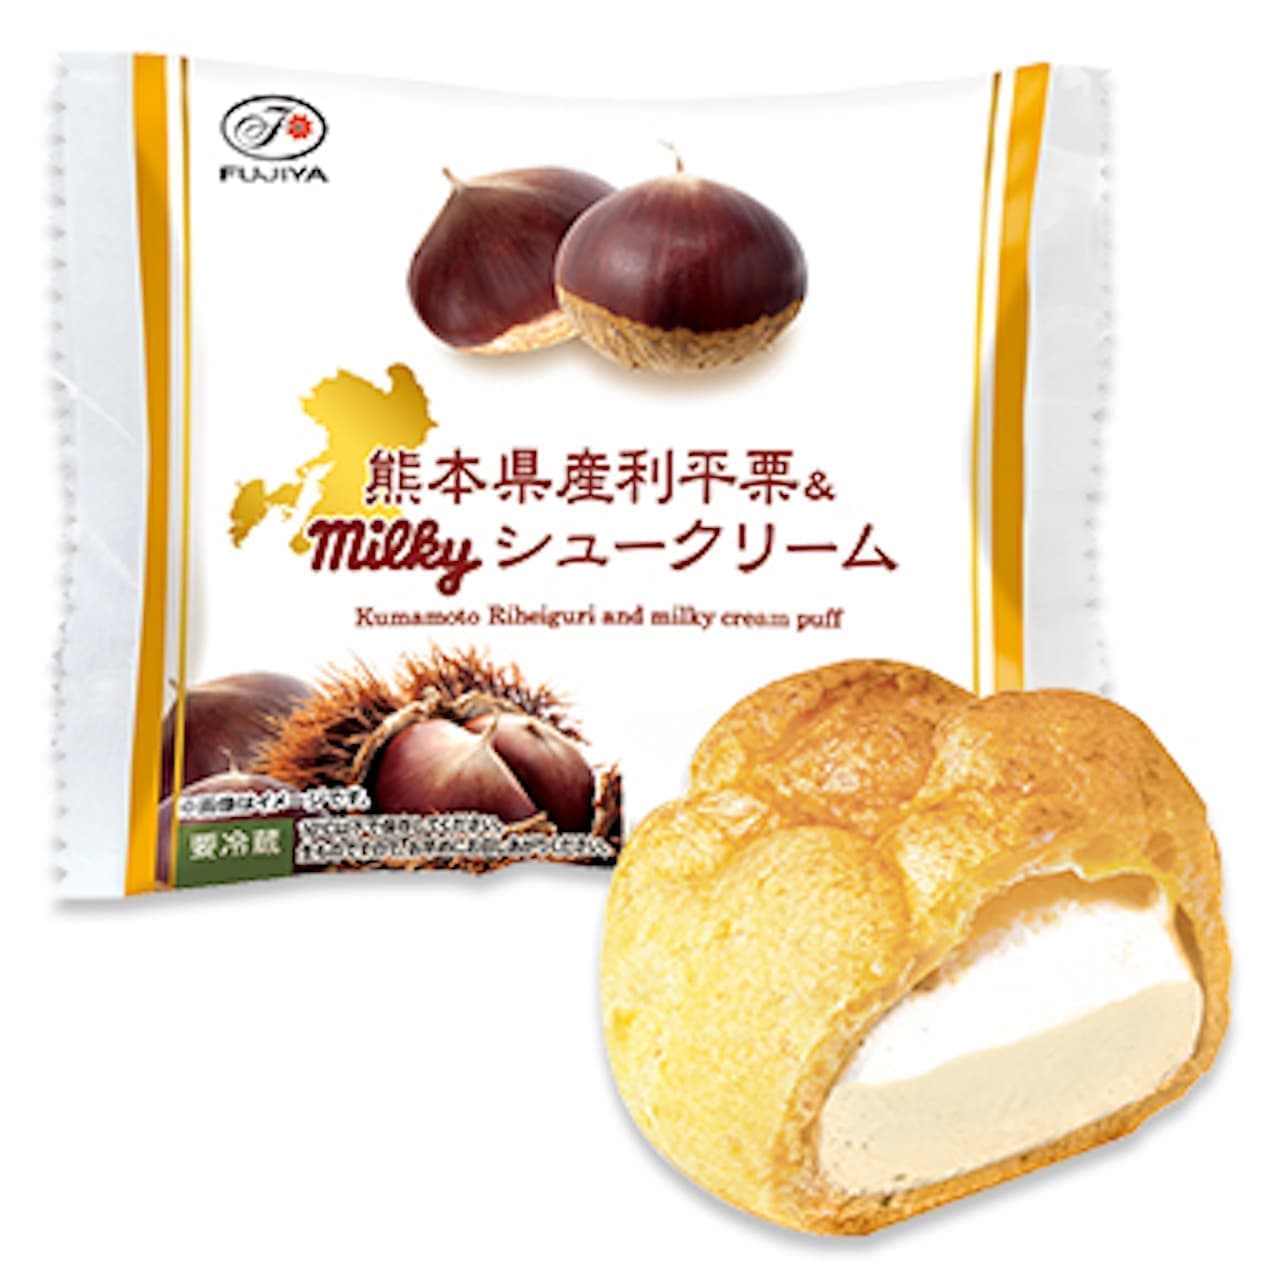 Fujiya "Kumamoto Rihei Chestnut & Milky Cream Puff".